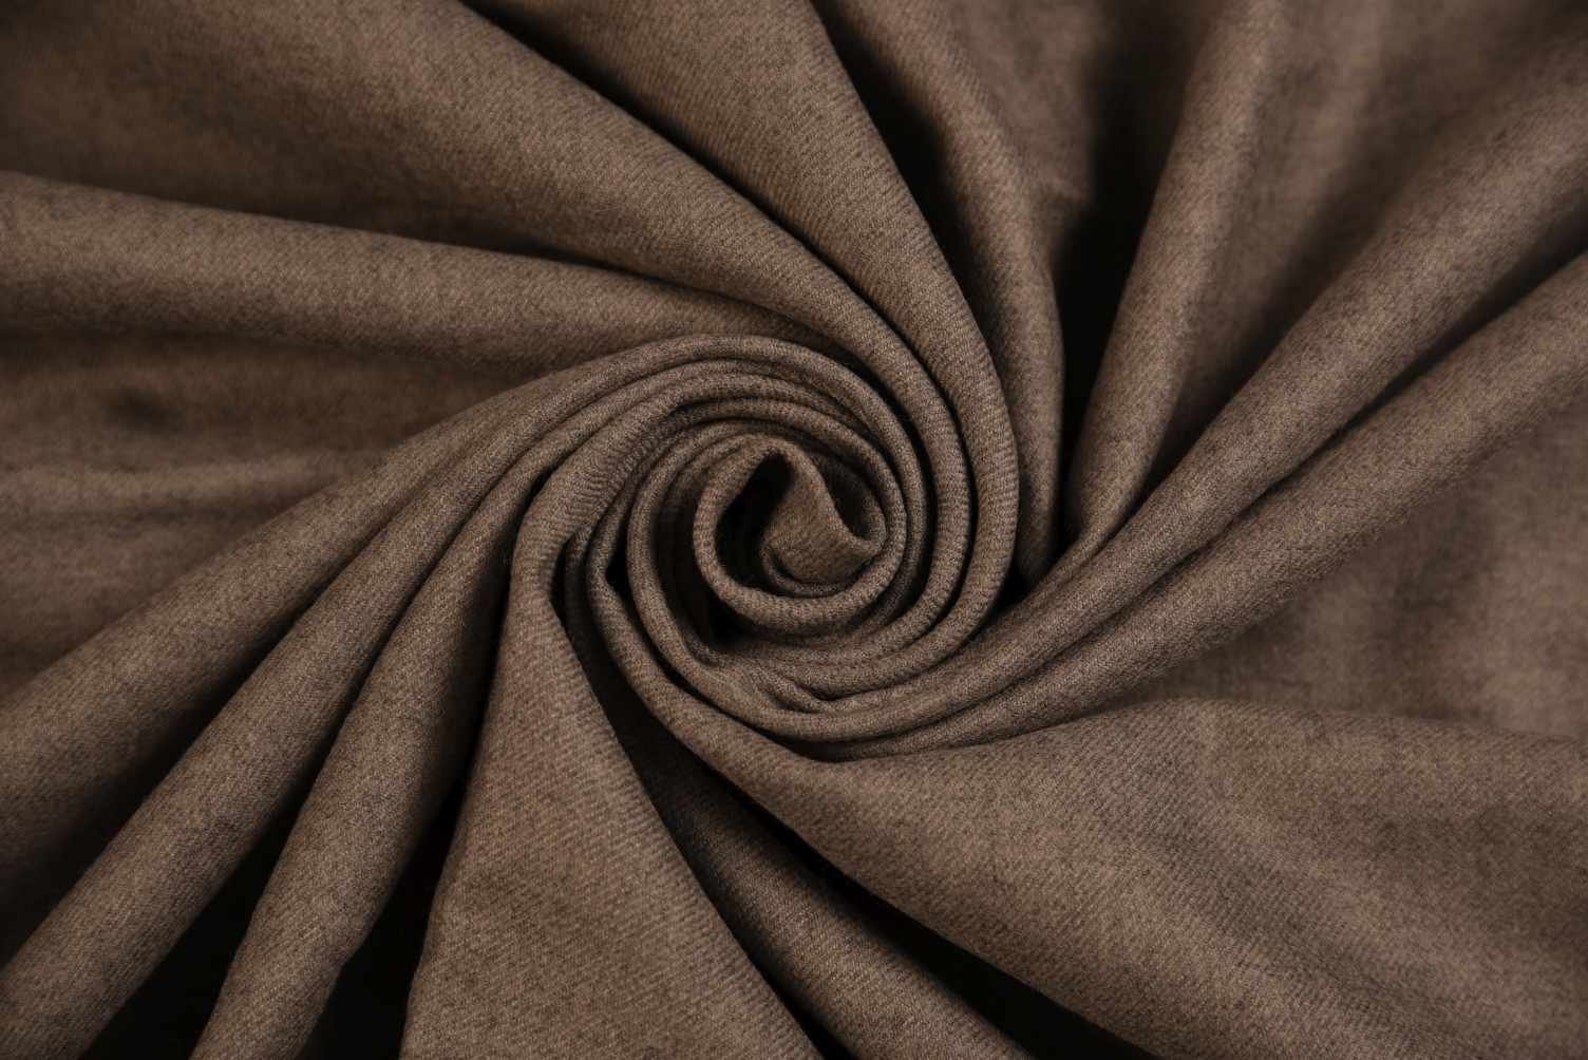 Wool Fabric Grey remnant Piece 90 Cm X 135 Cm Fashion Fabric | Etsy